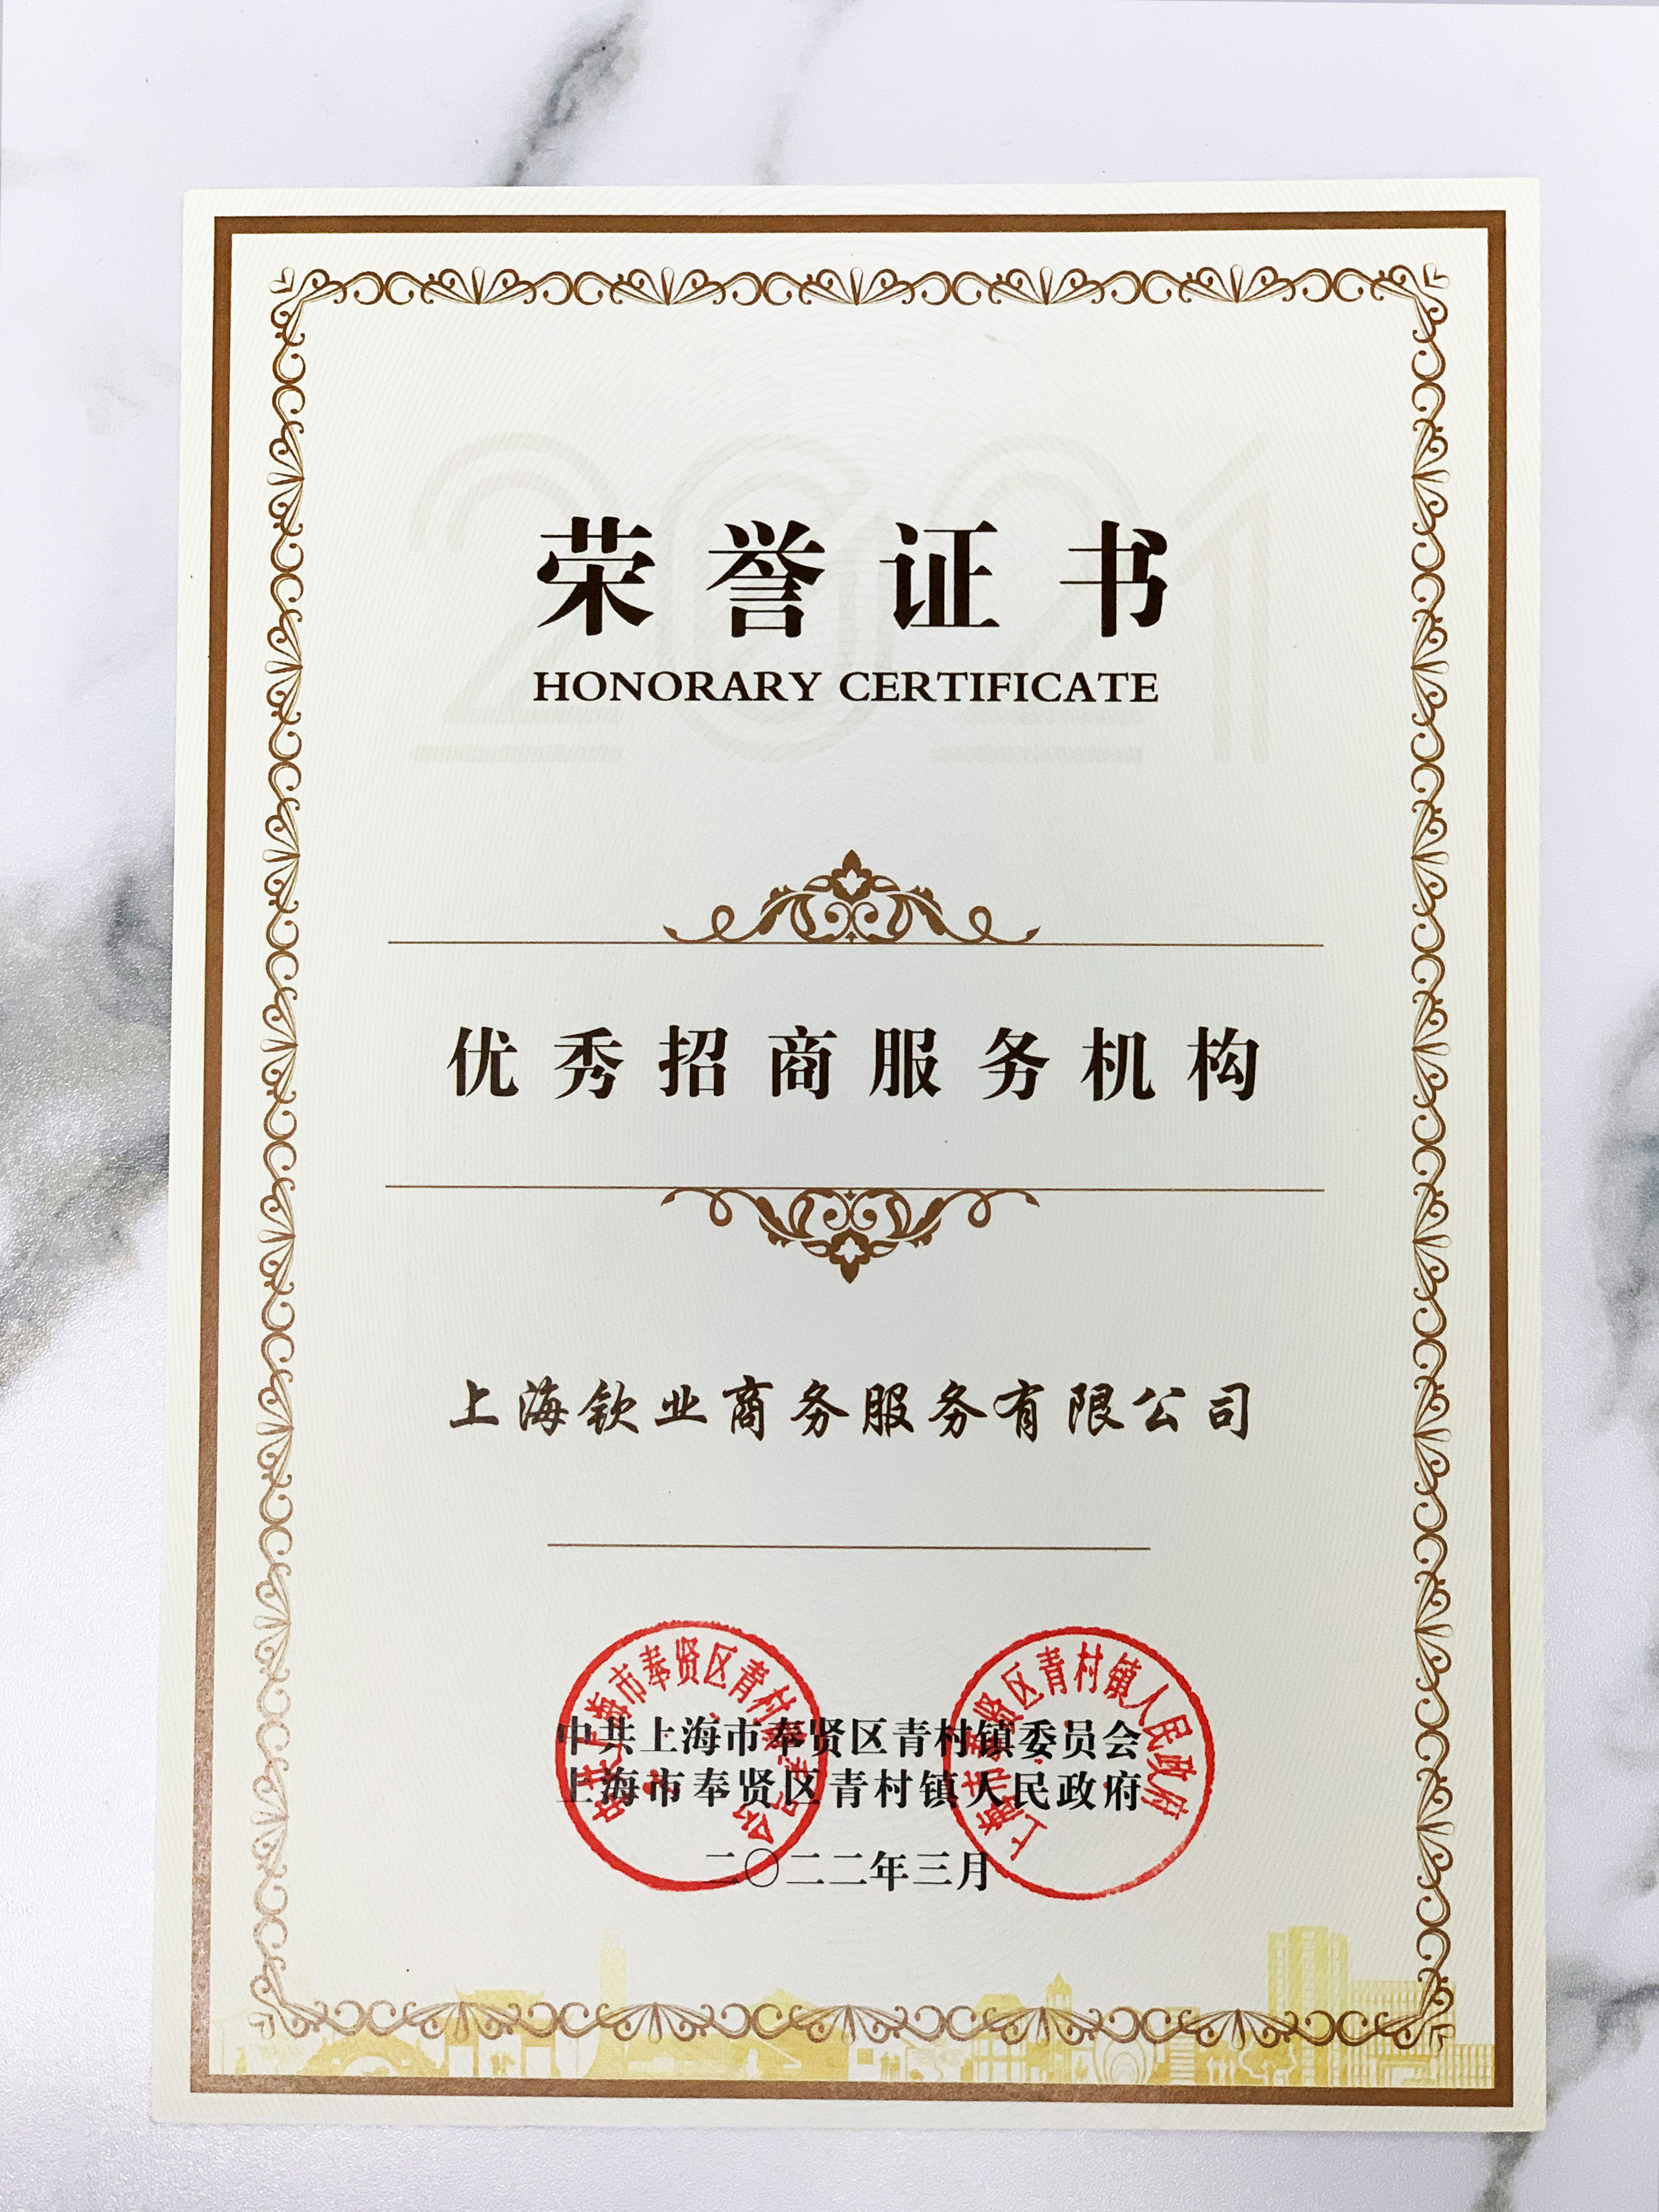 上海钦业商务服务有限公司荣获优秀招商服务机构证书